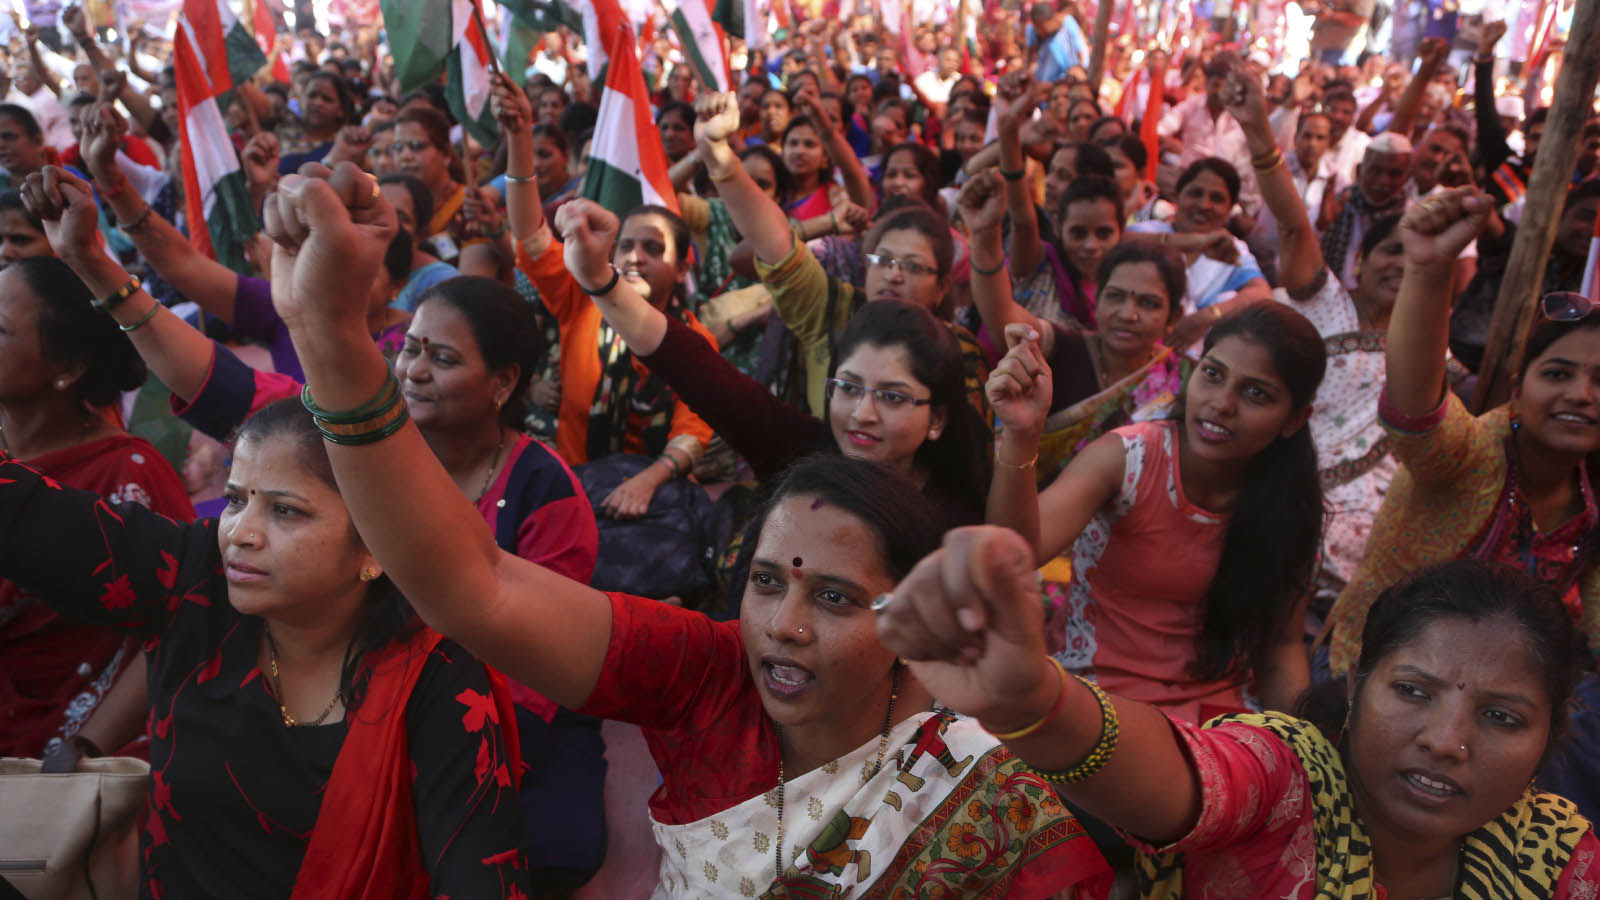 חברות איגוד מקצועי בהודו מפגינות בהפגנה במהלך שביתה כללית במדינה, 8 בינואר 2019 (AP Photo/Rafiq Maqbool)